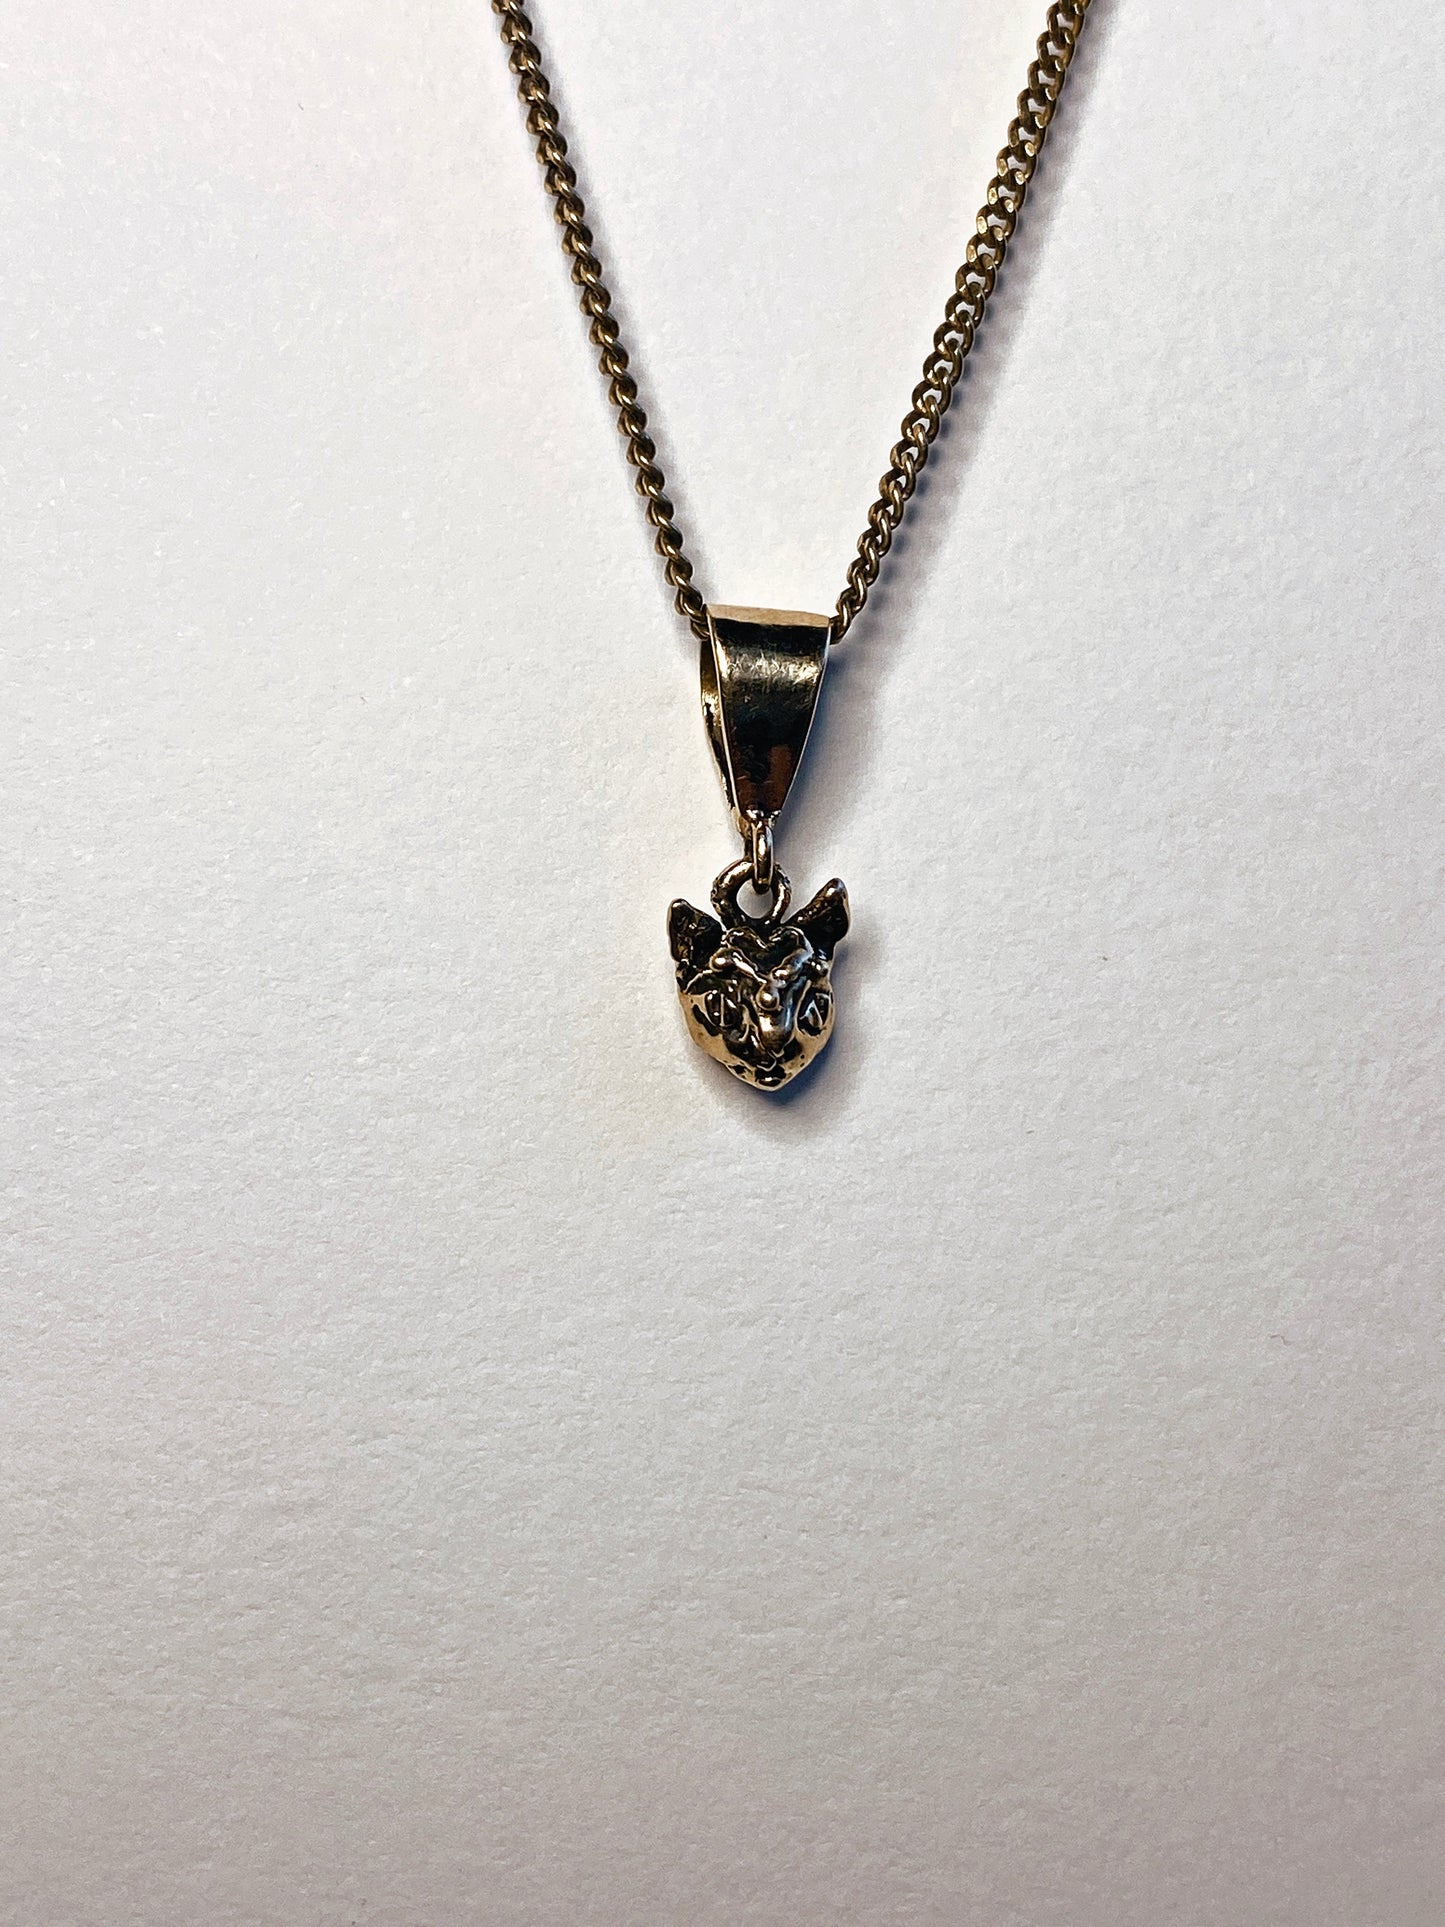 14k gold heart cat // tiny cat head charm